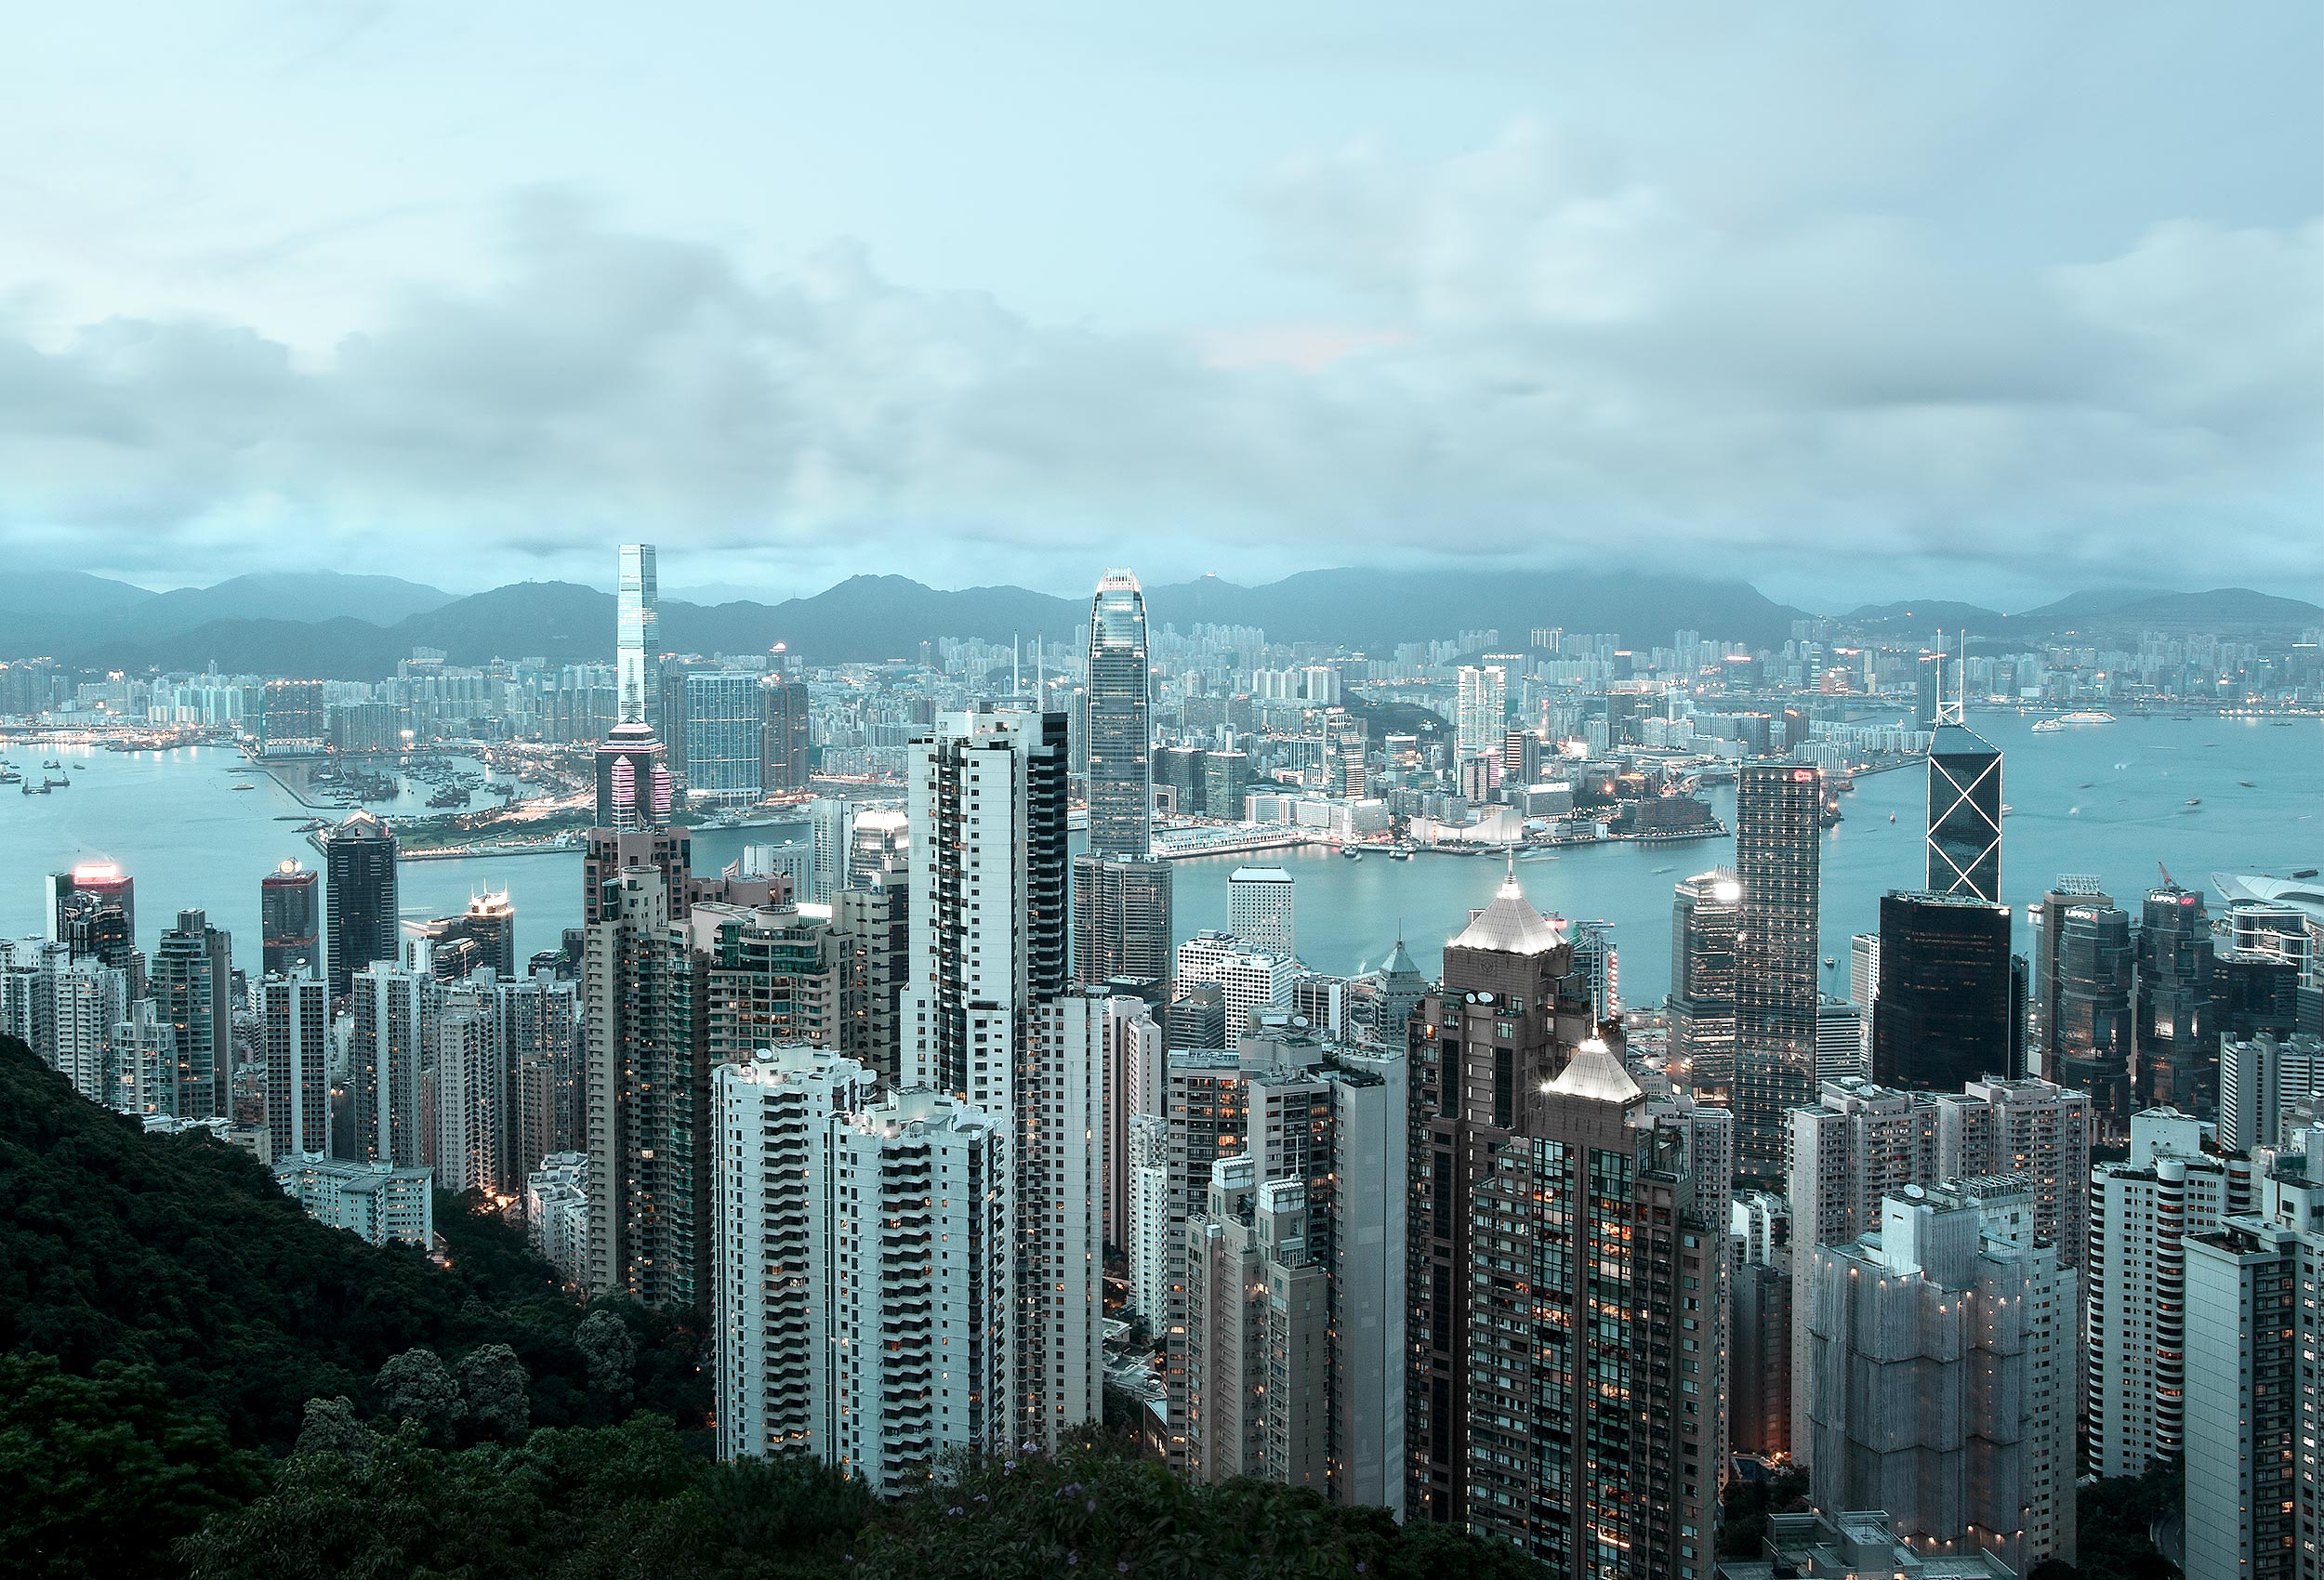 Hong Kong  by cityscape photographer Kristopher Grunert